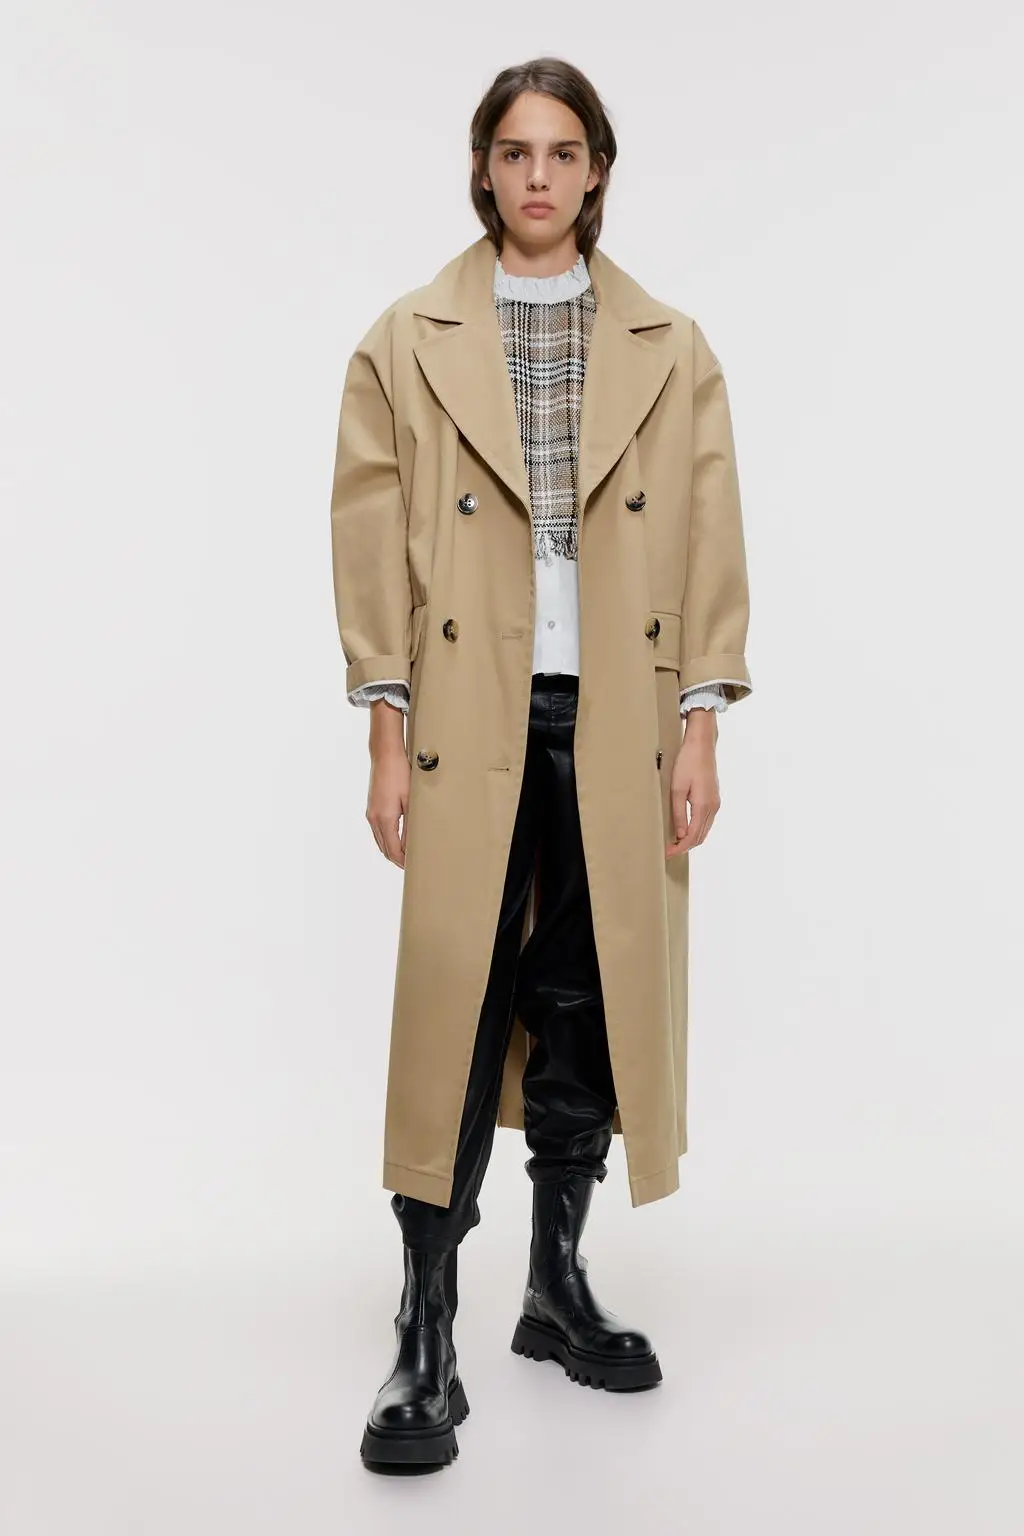 ZA классический цвет хаки британский стиль Женская куртка модная двубортная с длинным рукавом модная Повседневная зимняя куртка